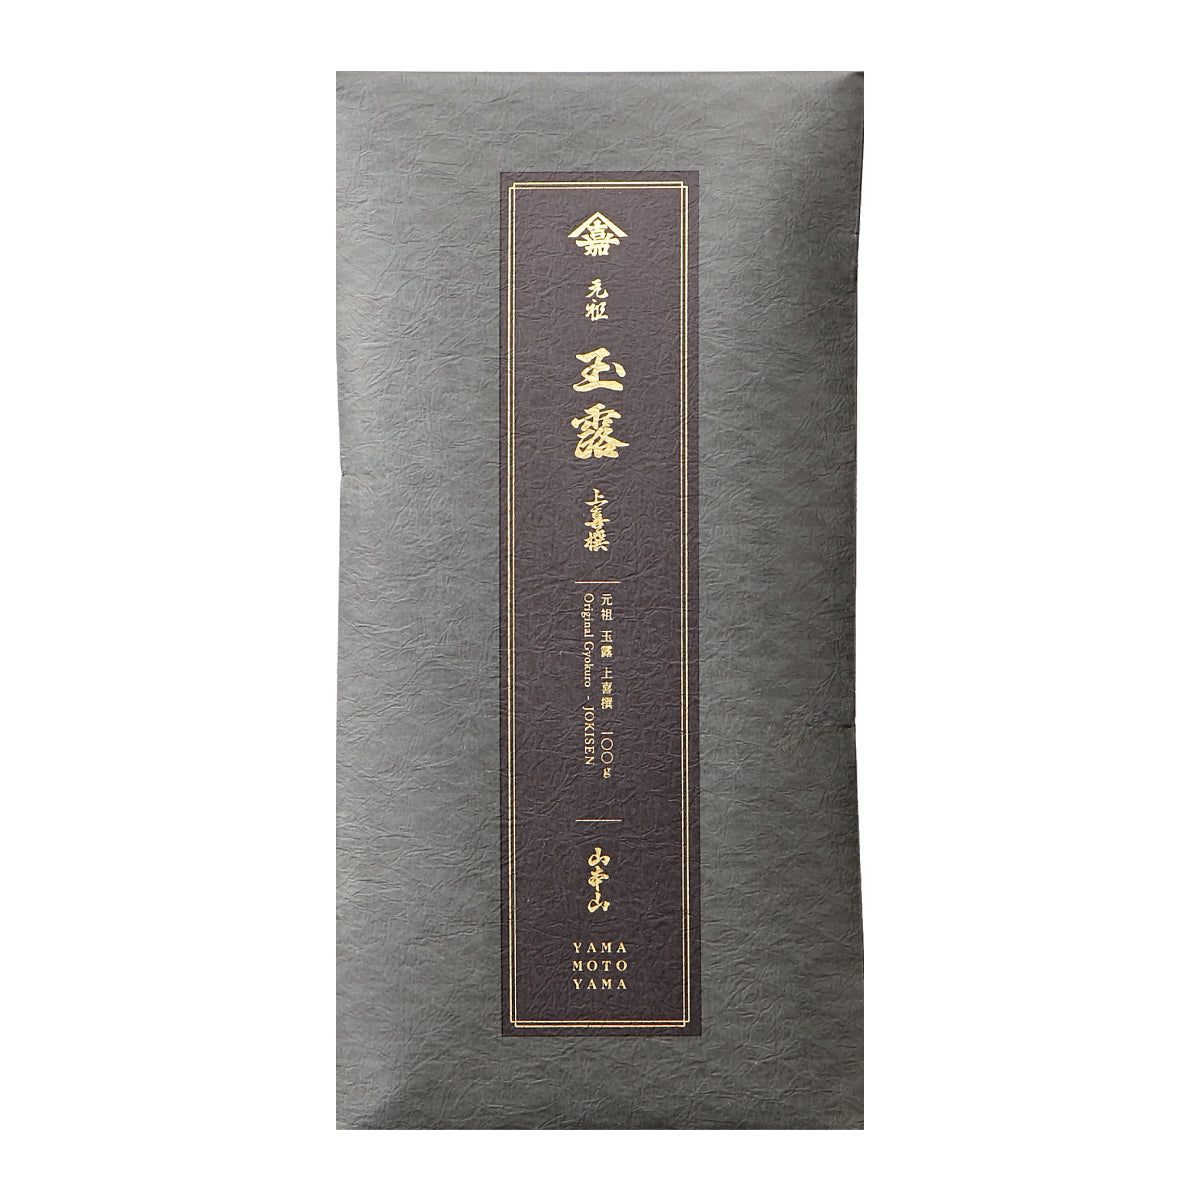 Original Gyokuro Jokisen Loose Leaf Tea